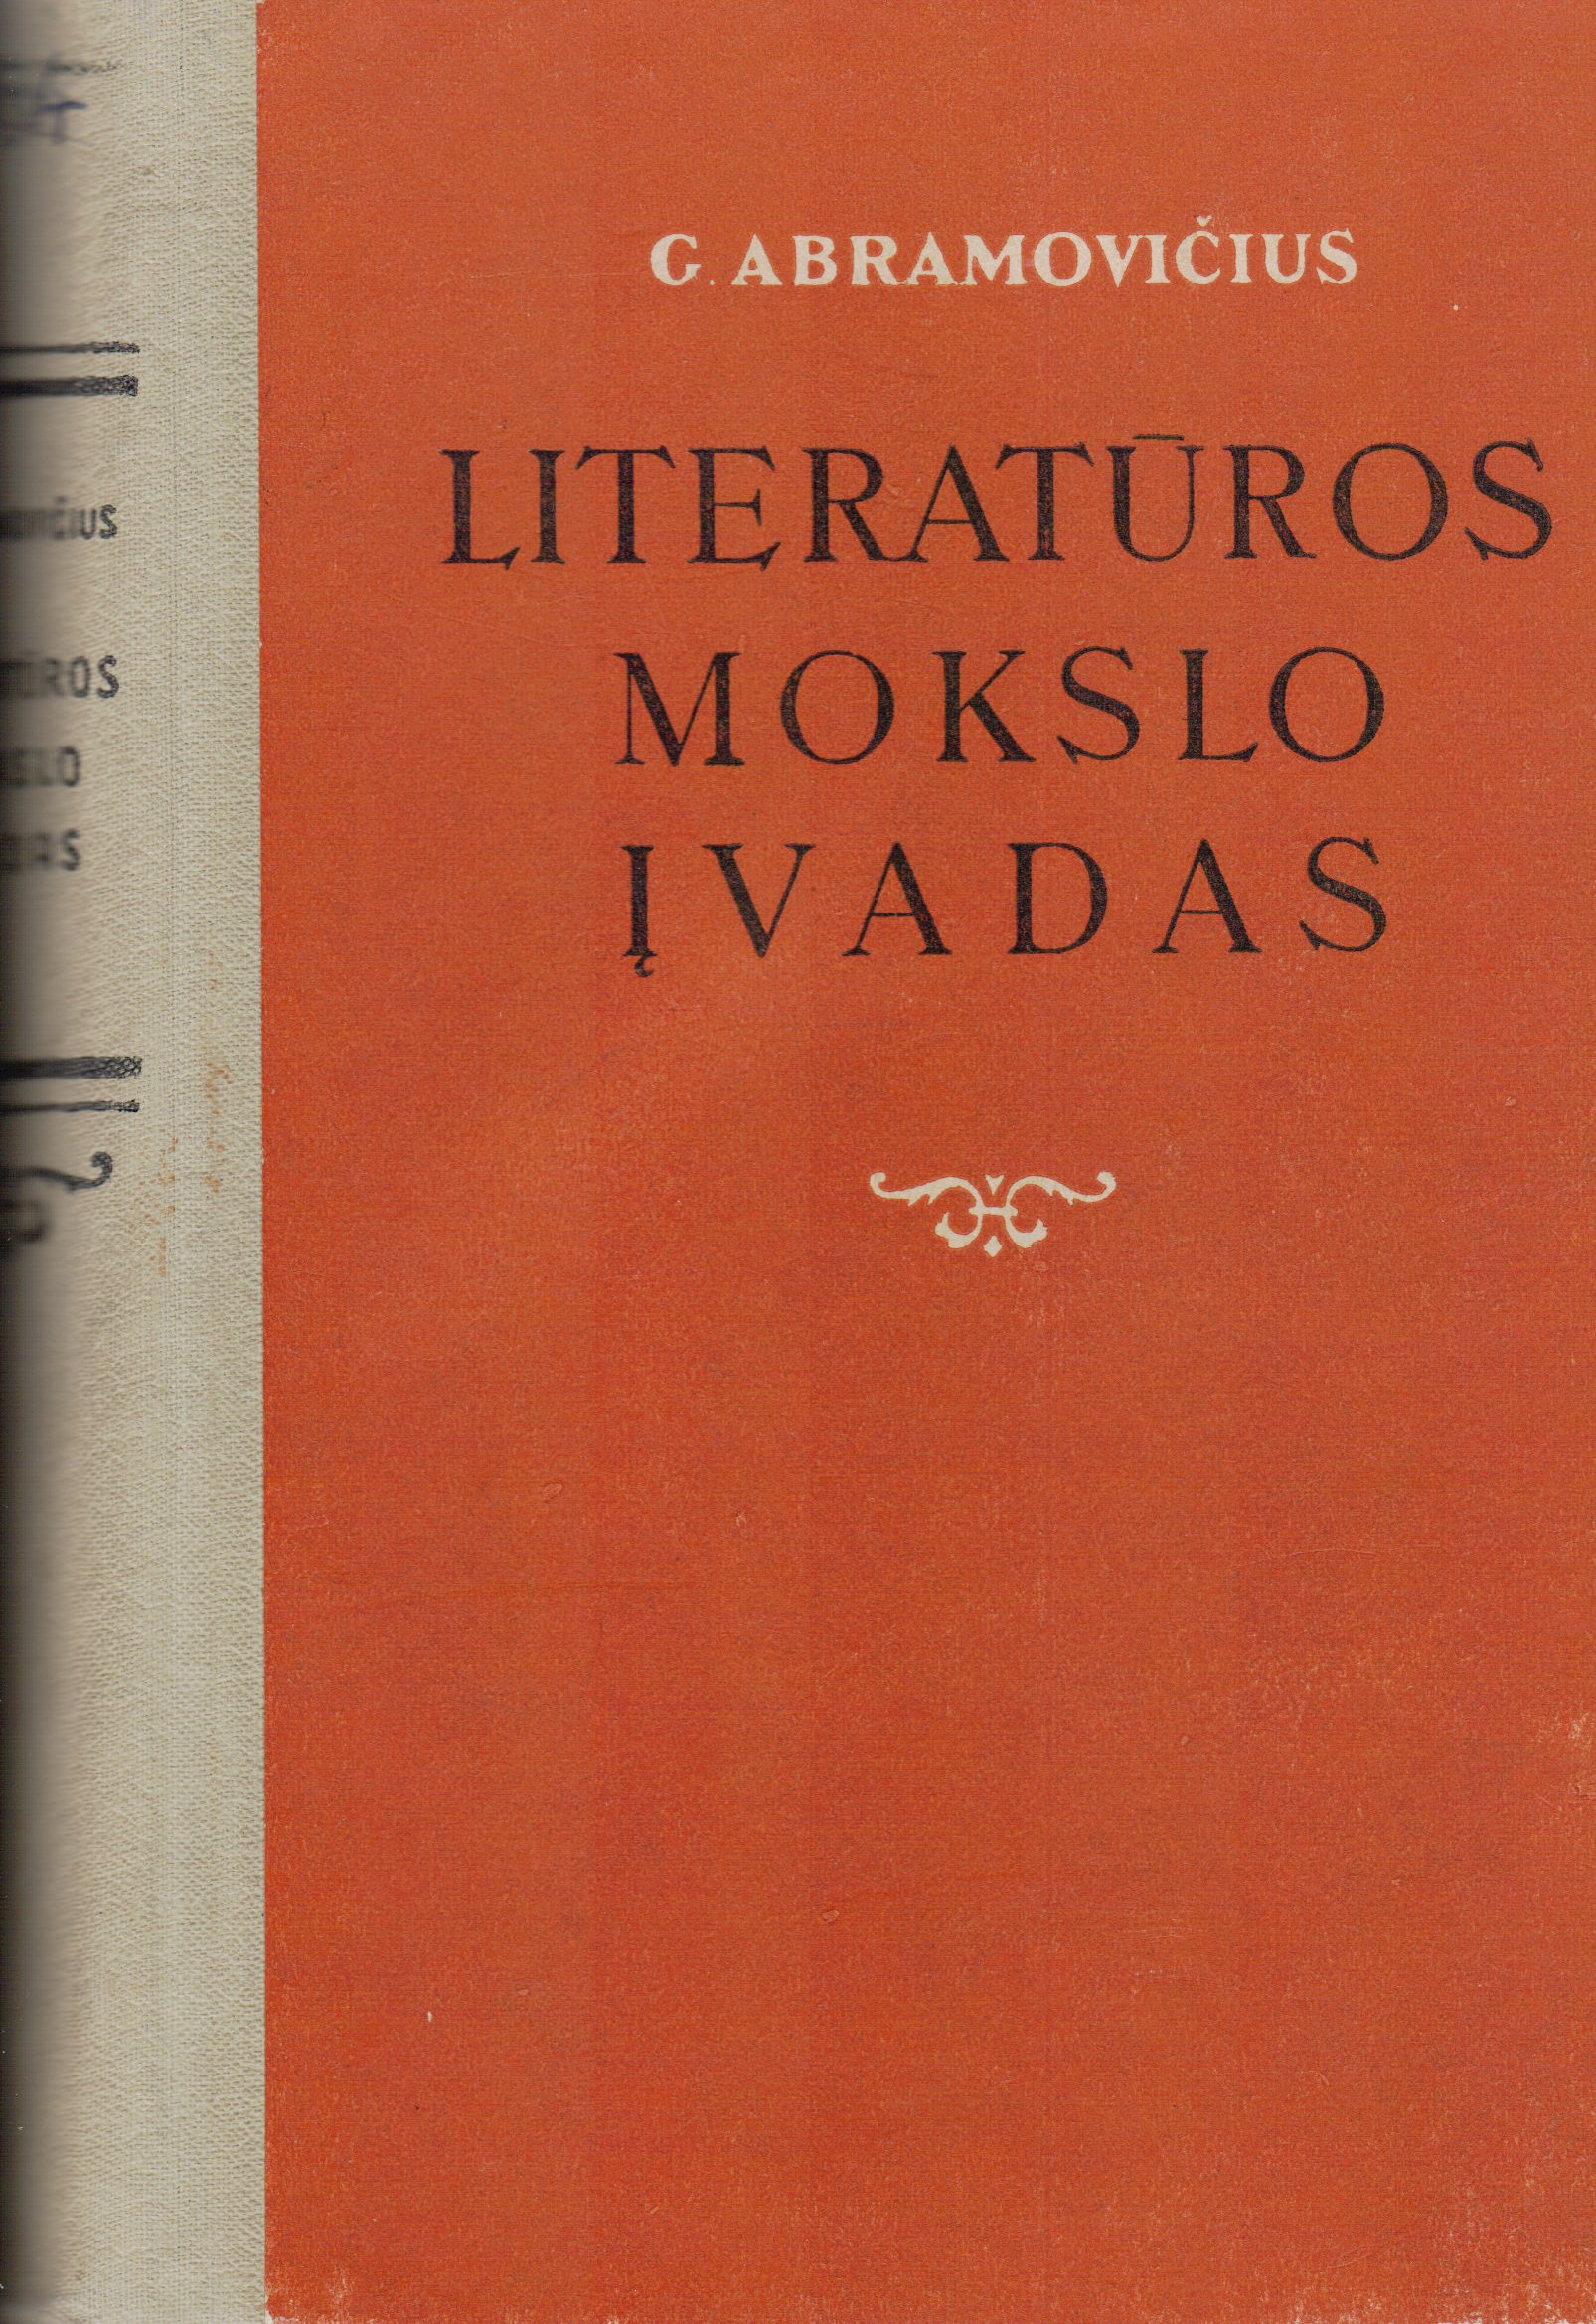 G. Abramovičius. Literatūros mokslo įvadas. Vertė V. Zaborskaitė. V., 1955. MLLM 2754